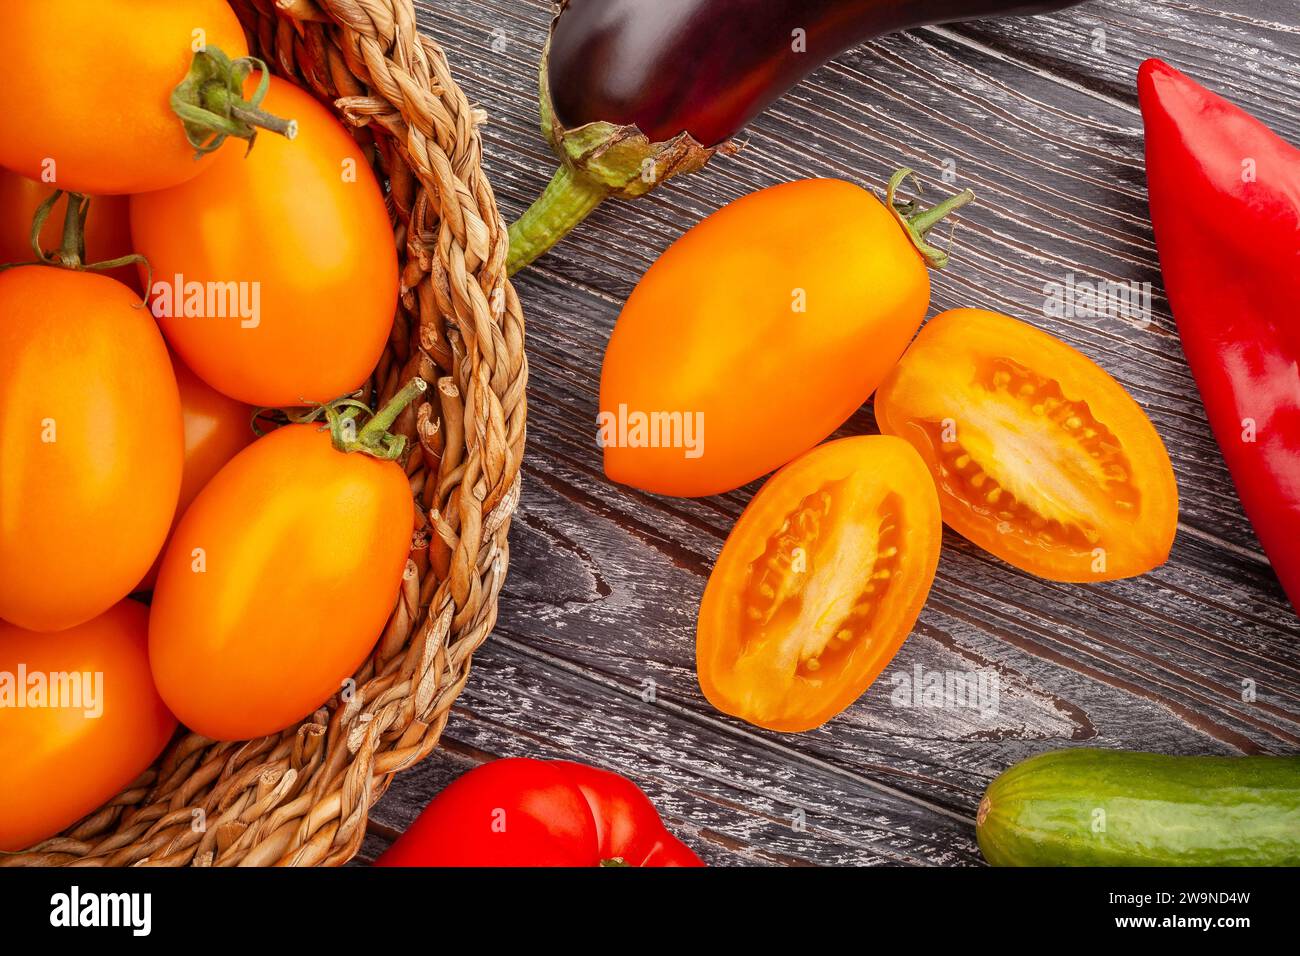 pomodoro all'arancia e prugna a fette su fondo di legno Foto Stock